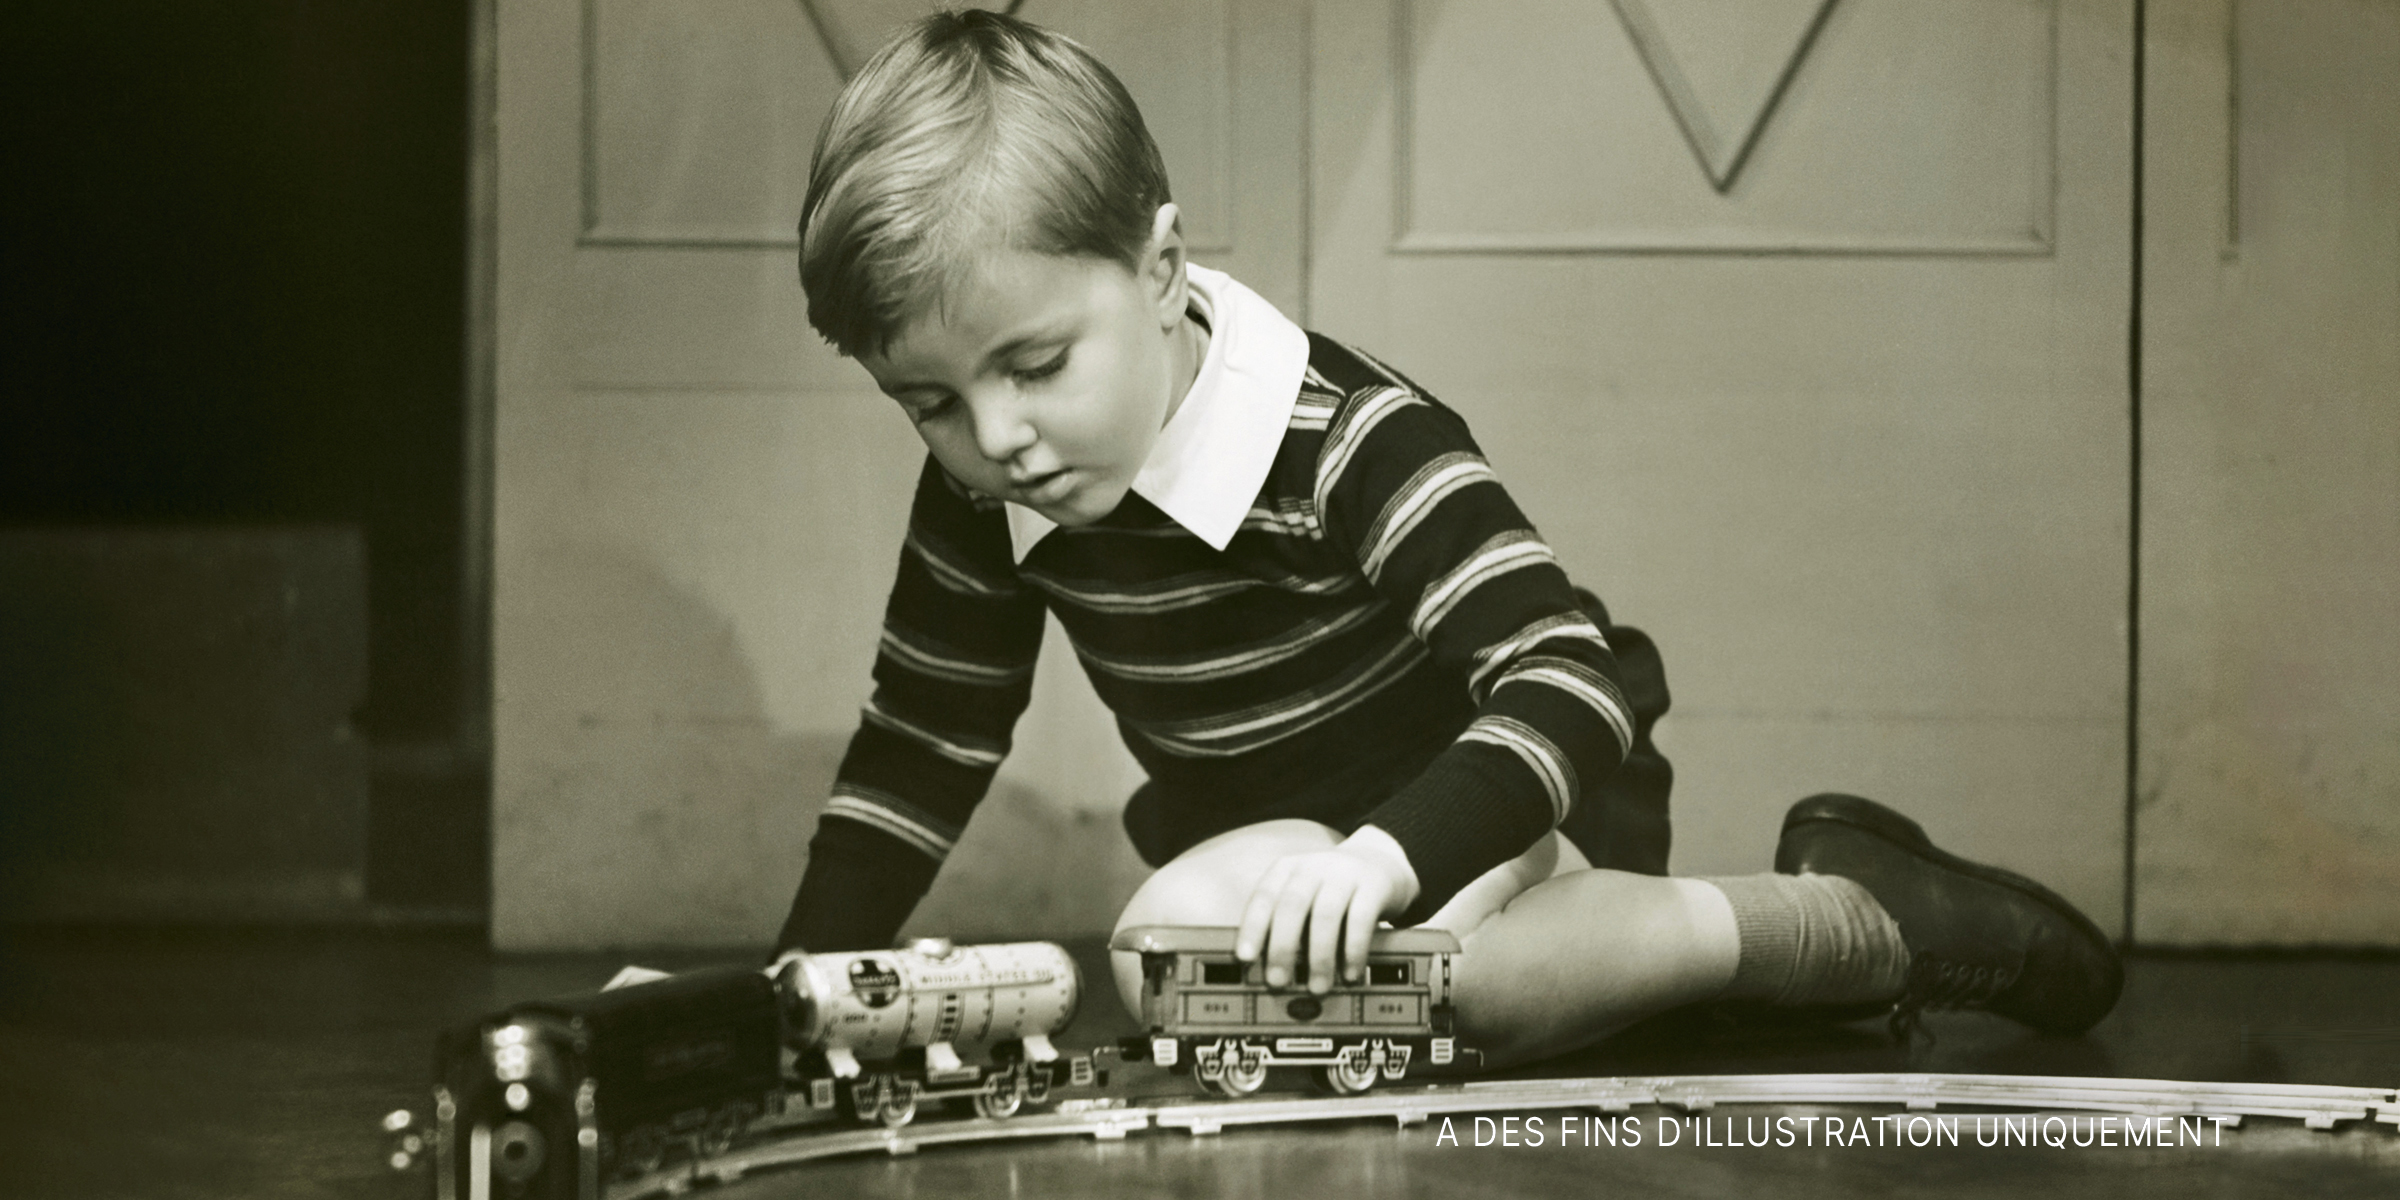 Un petit garçon jouant avec un train miniature | Source : Getty Images